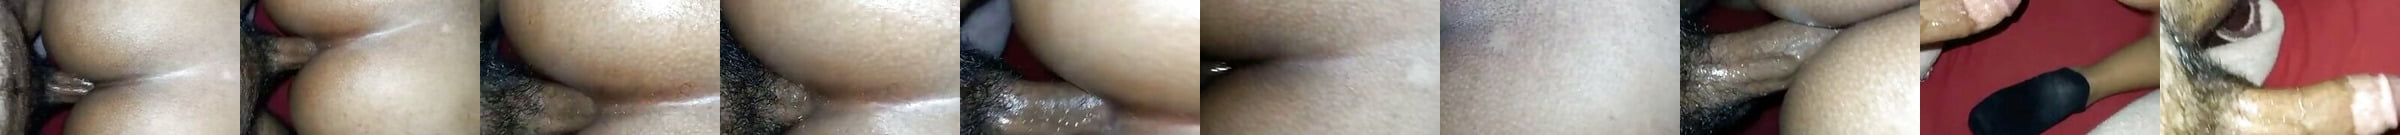 Emma Matia Shaking Her Bikini Ass For You Free Porn 64